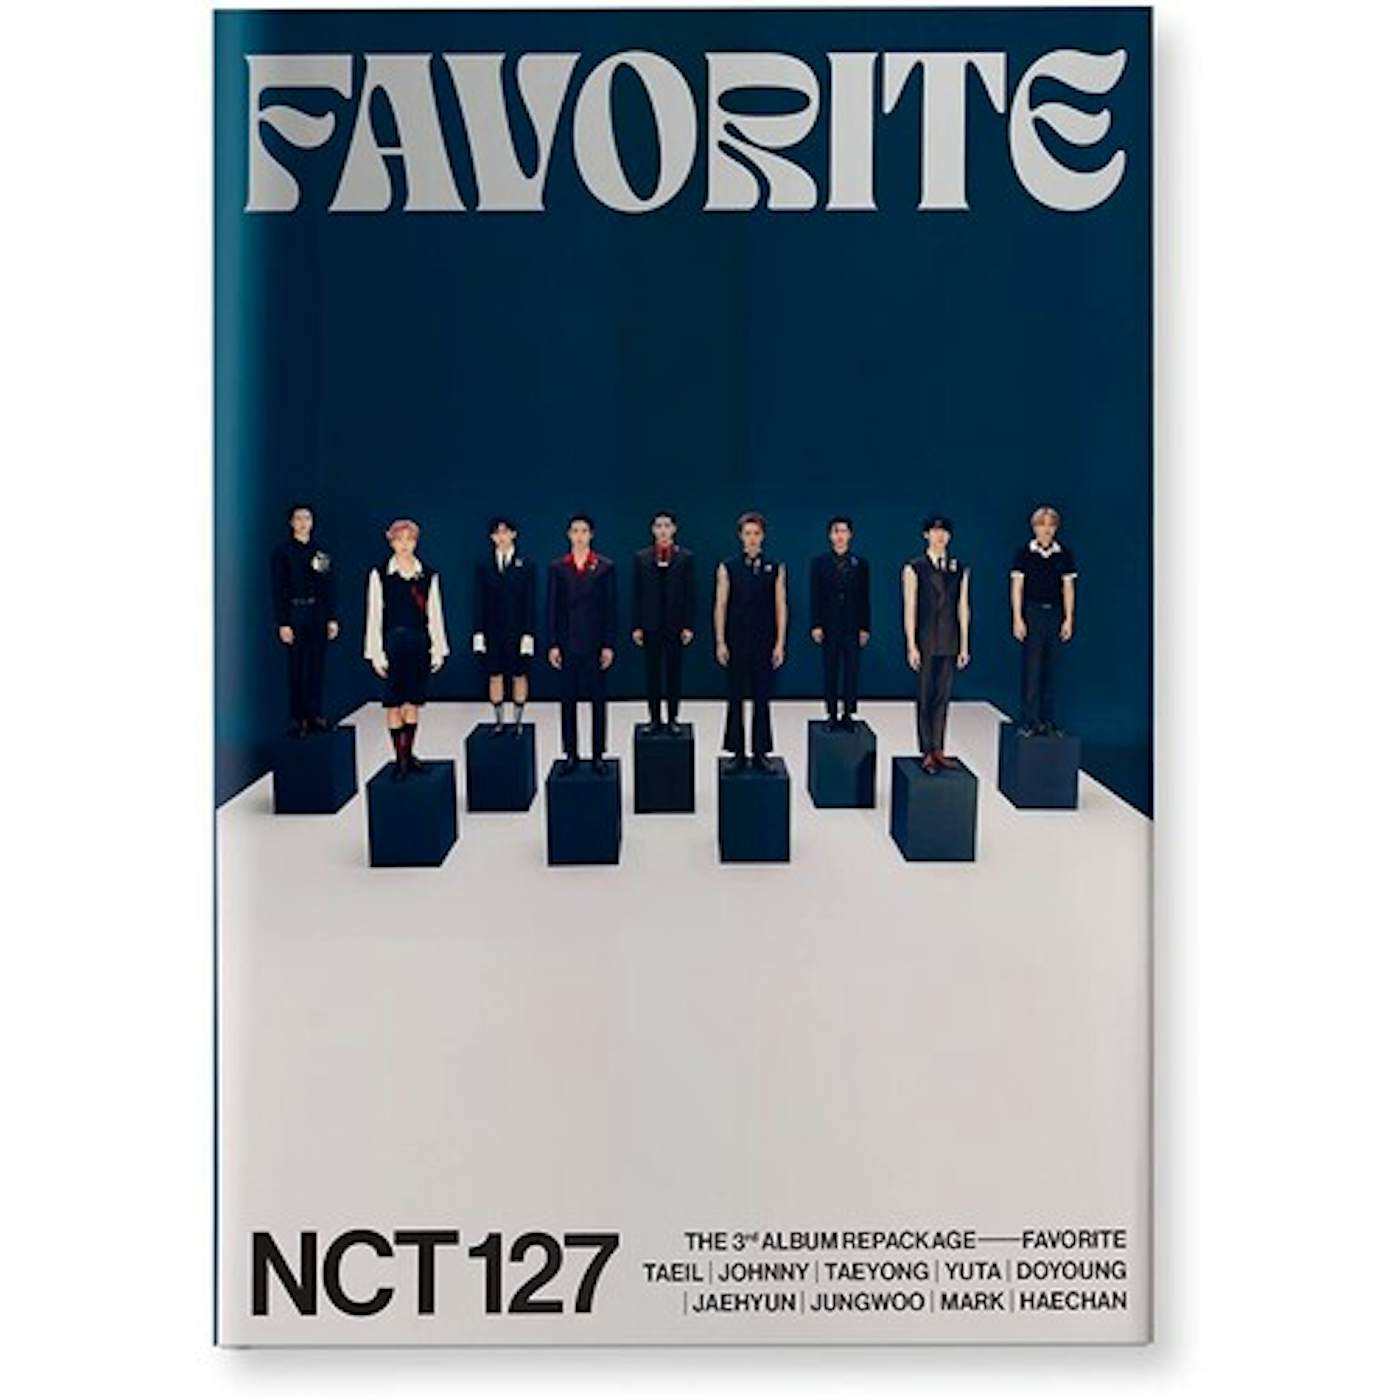 NCT 127 3RD ALBUM REPACKAGE FAVORITE [CLASSIC VER] CD